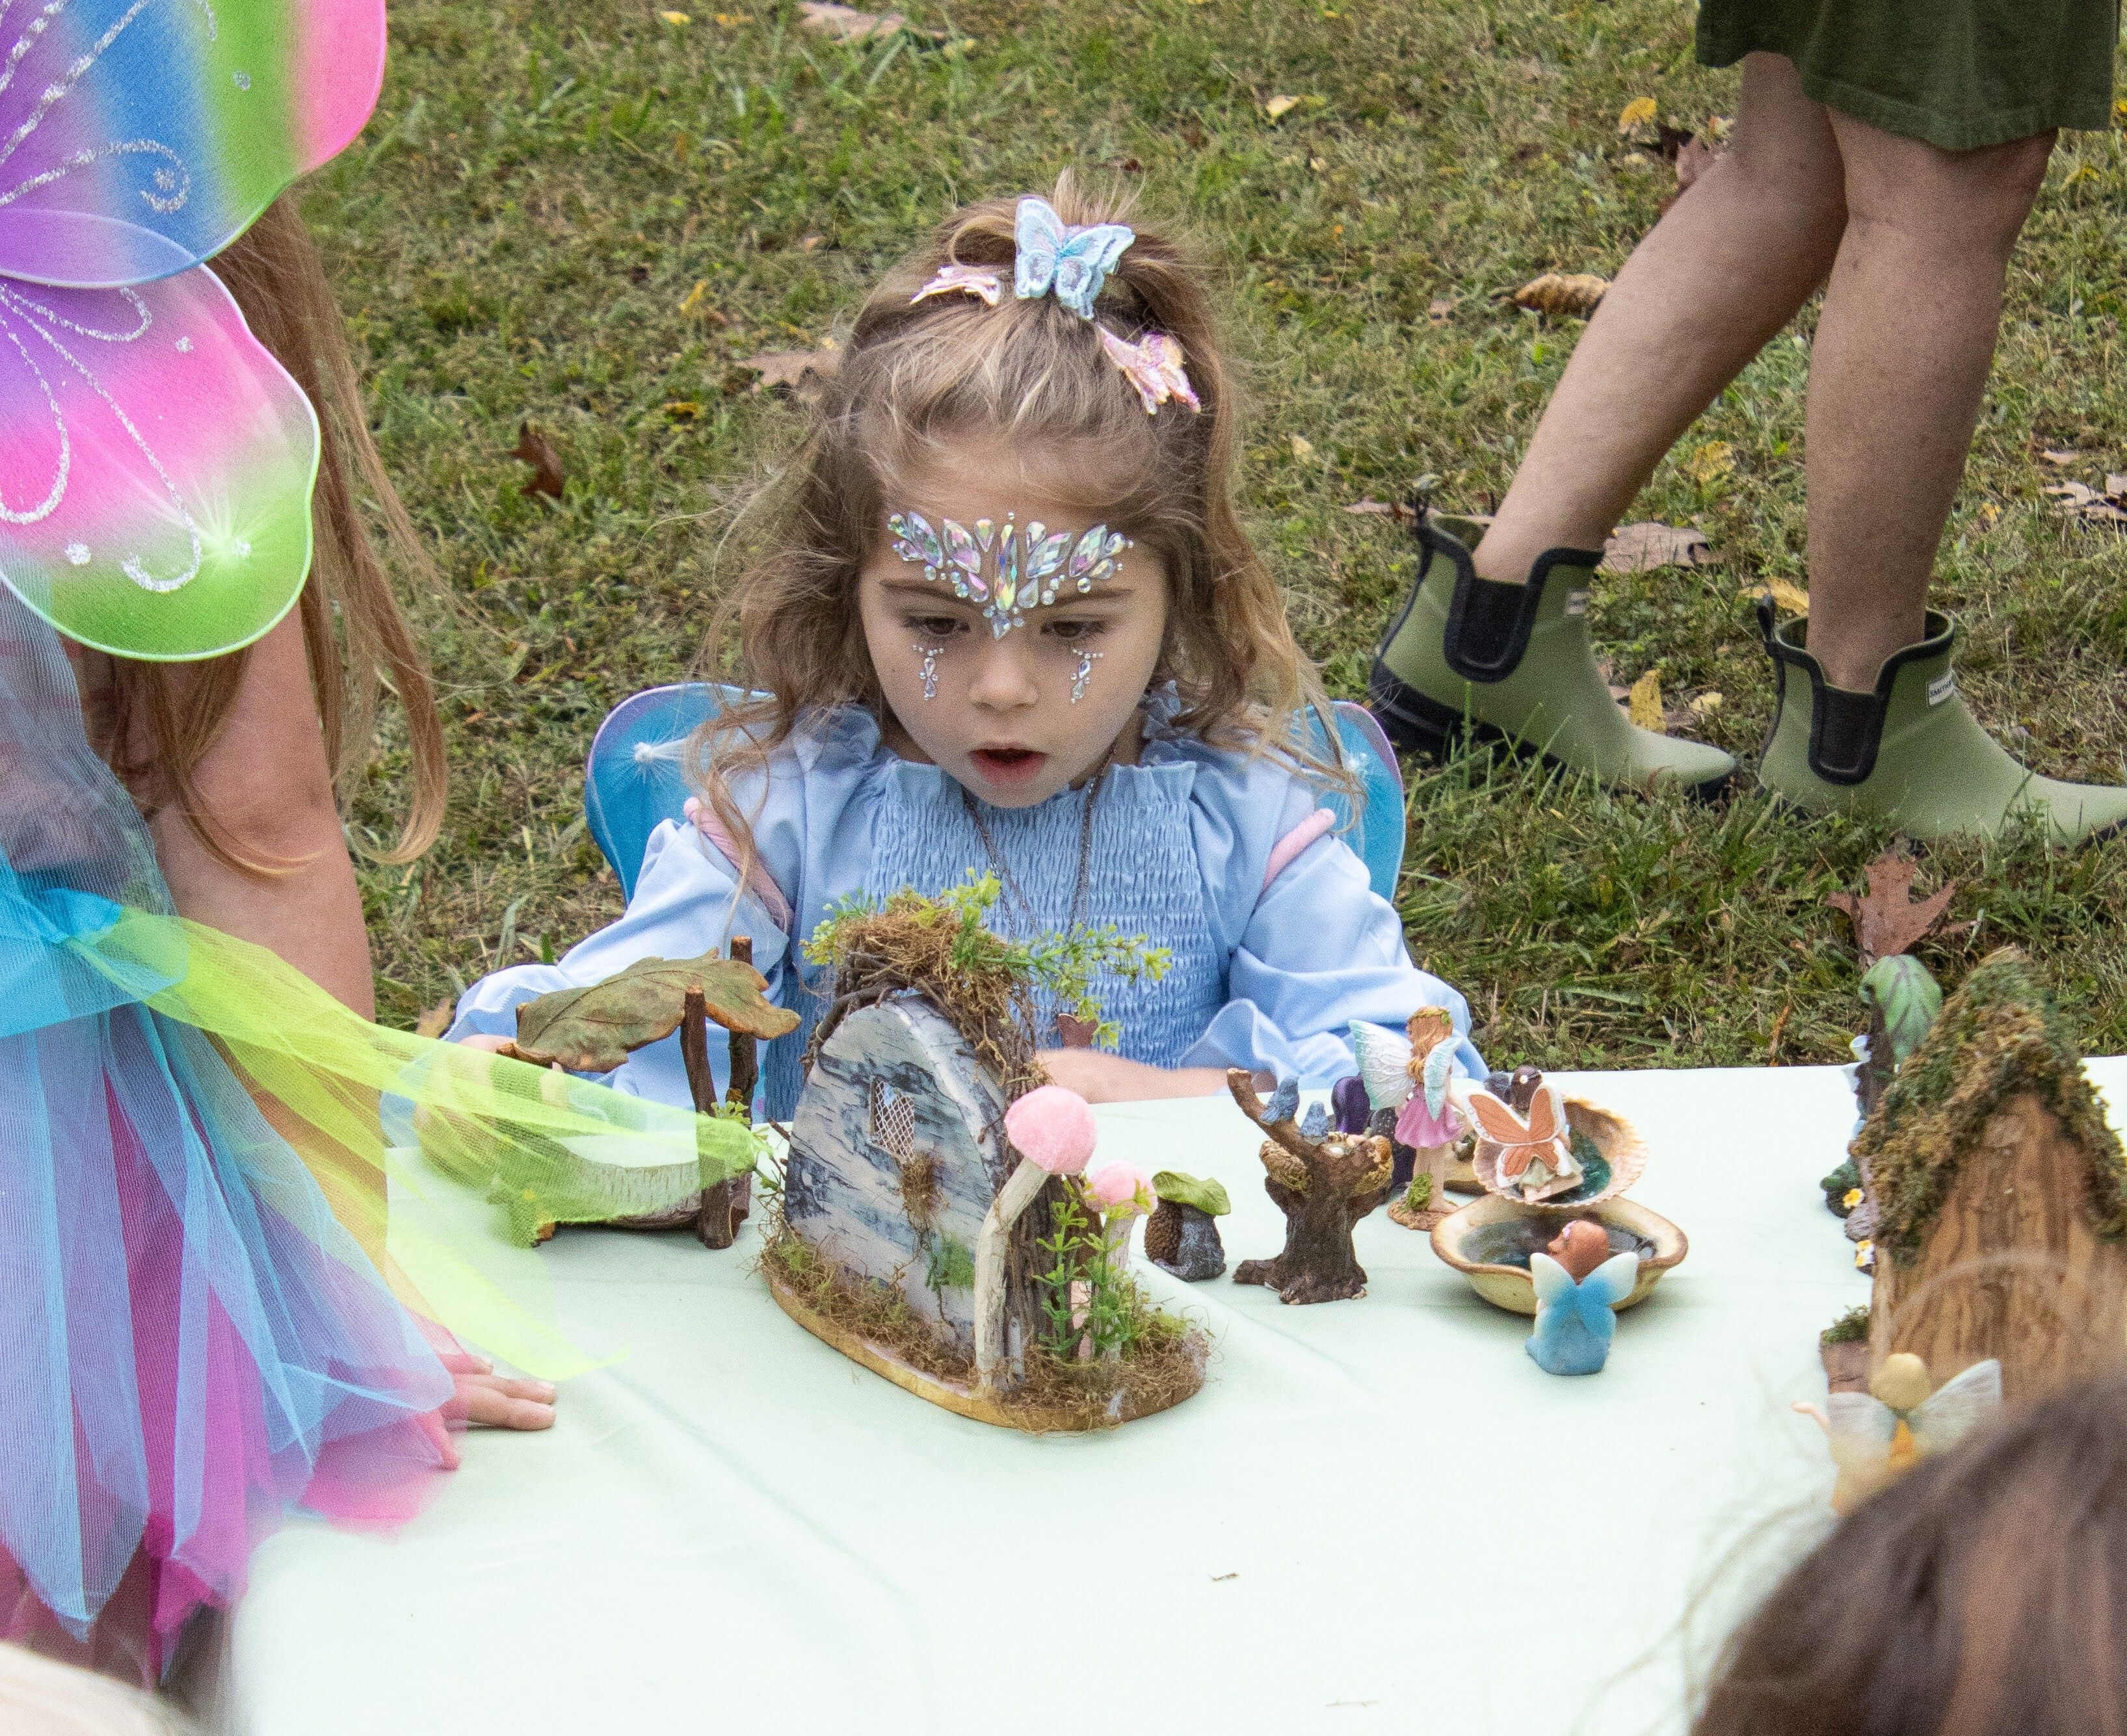 Fairyfest: Saturday, October 12